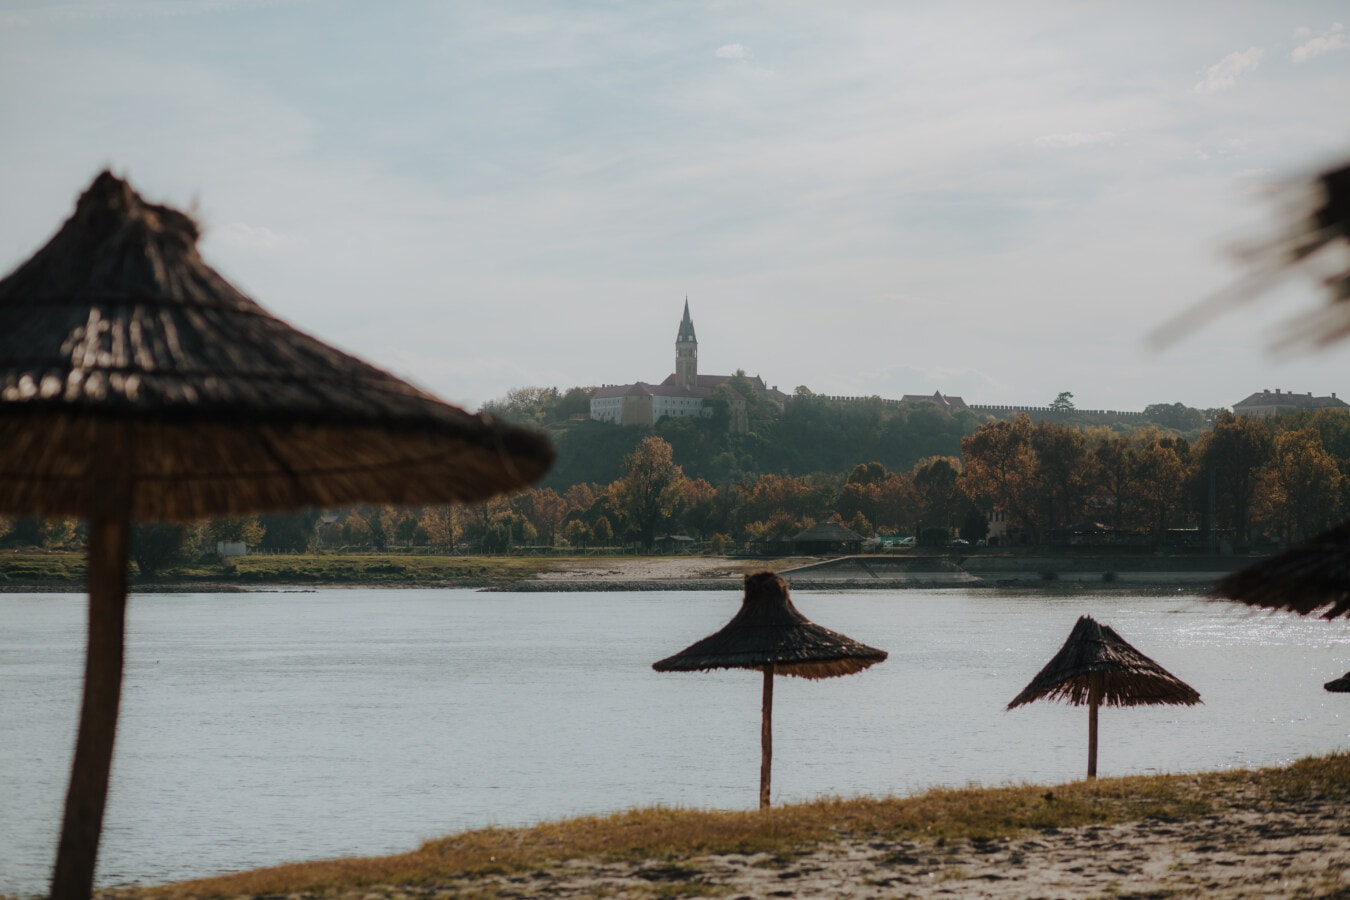 пляж, Дунай, река, берег реки, зонтик, осенний сезон, пейзаж, спокойный, вода, дерево